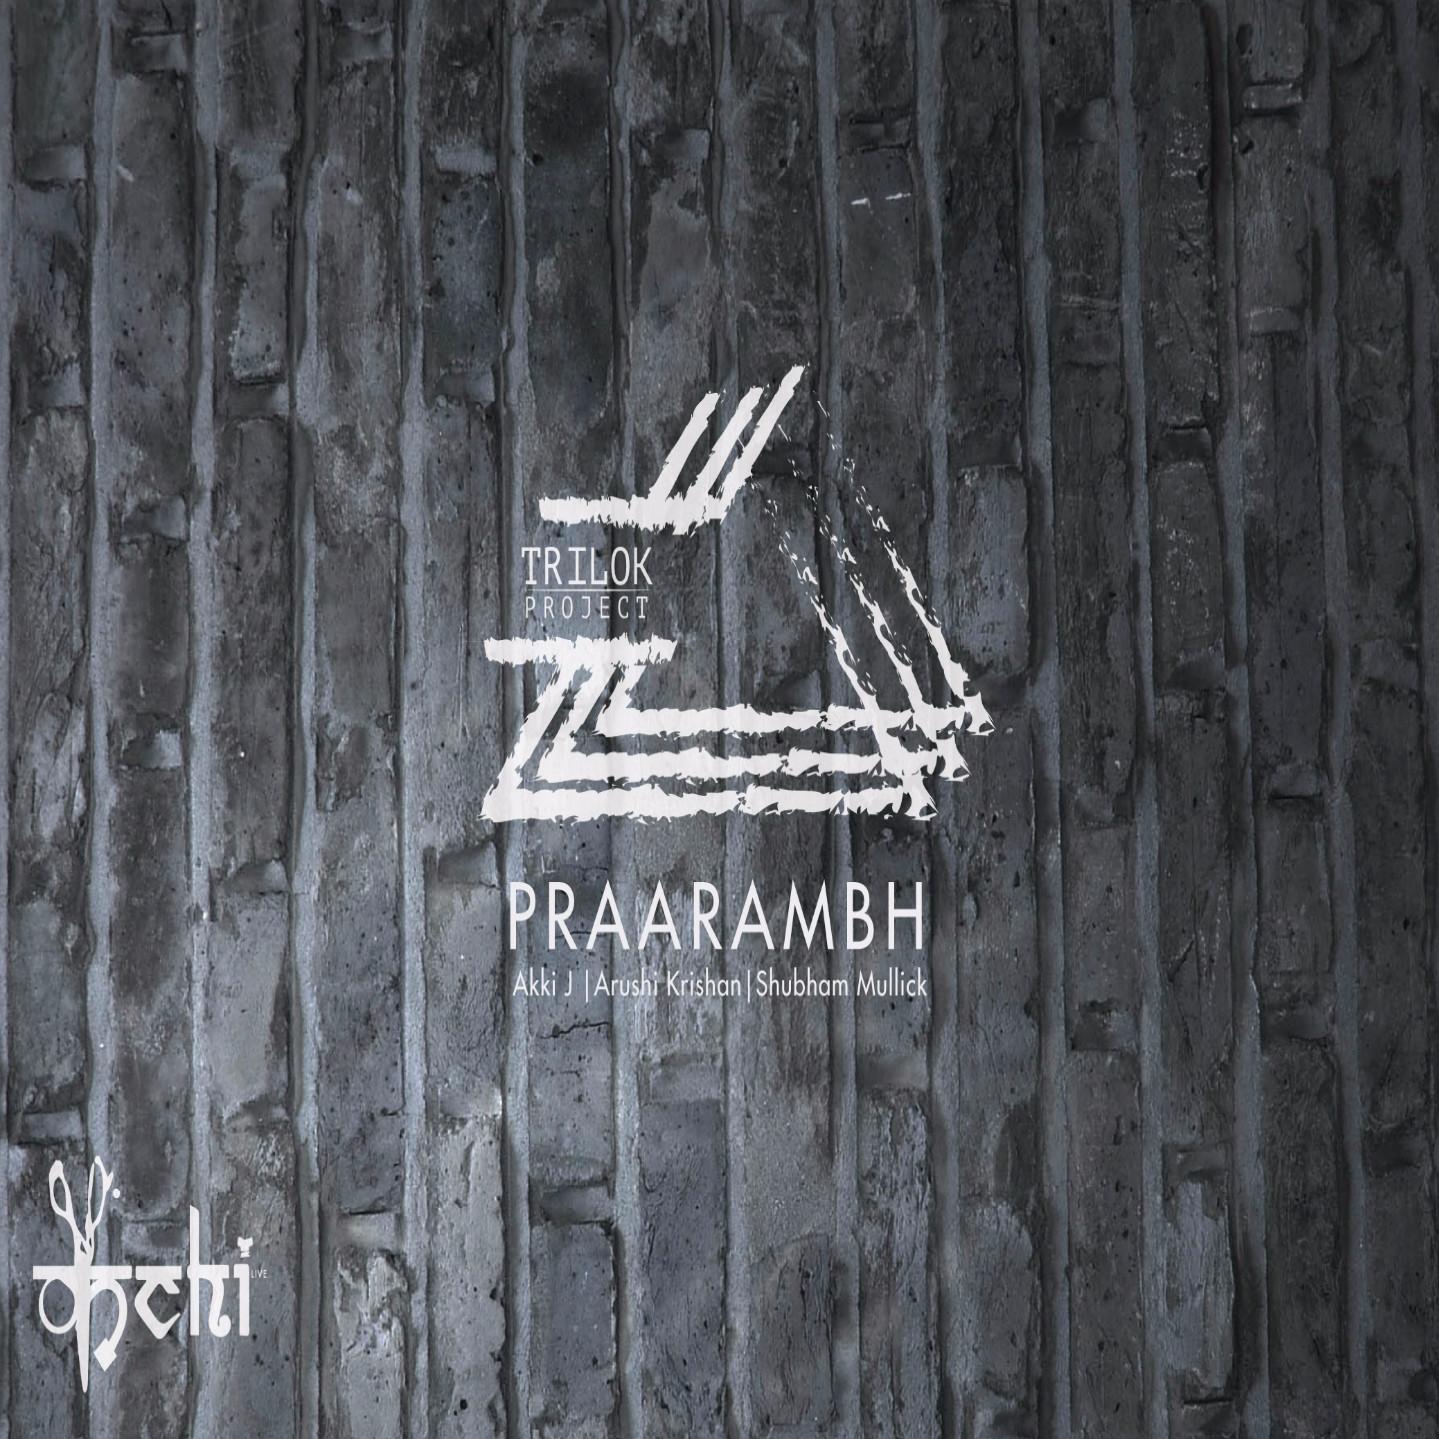 Praarambh by Akki J